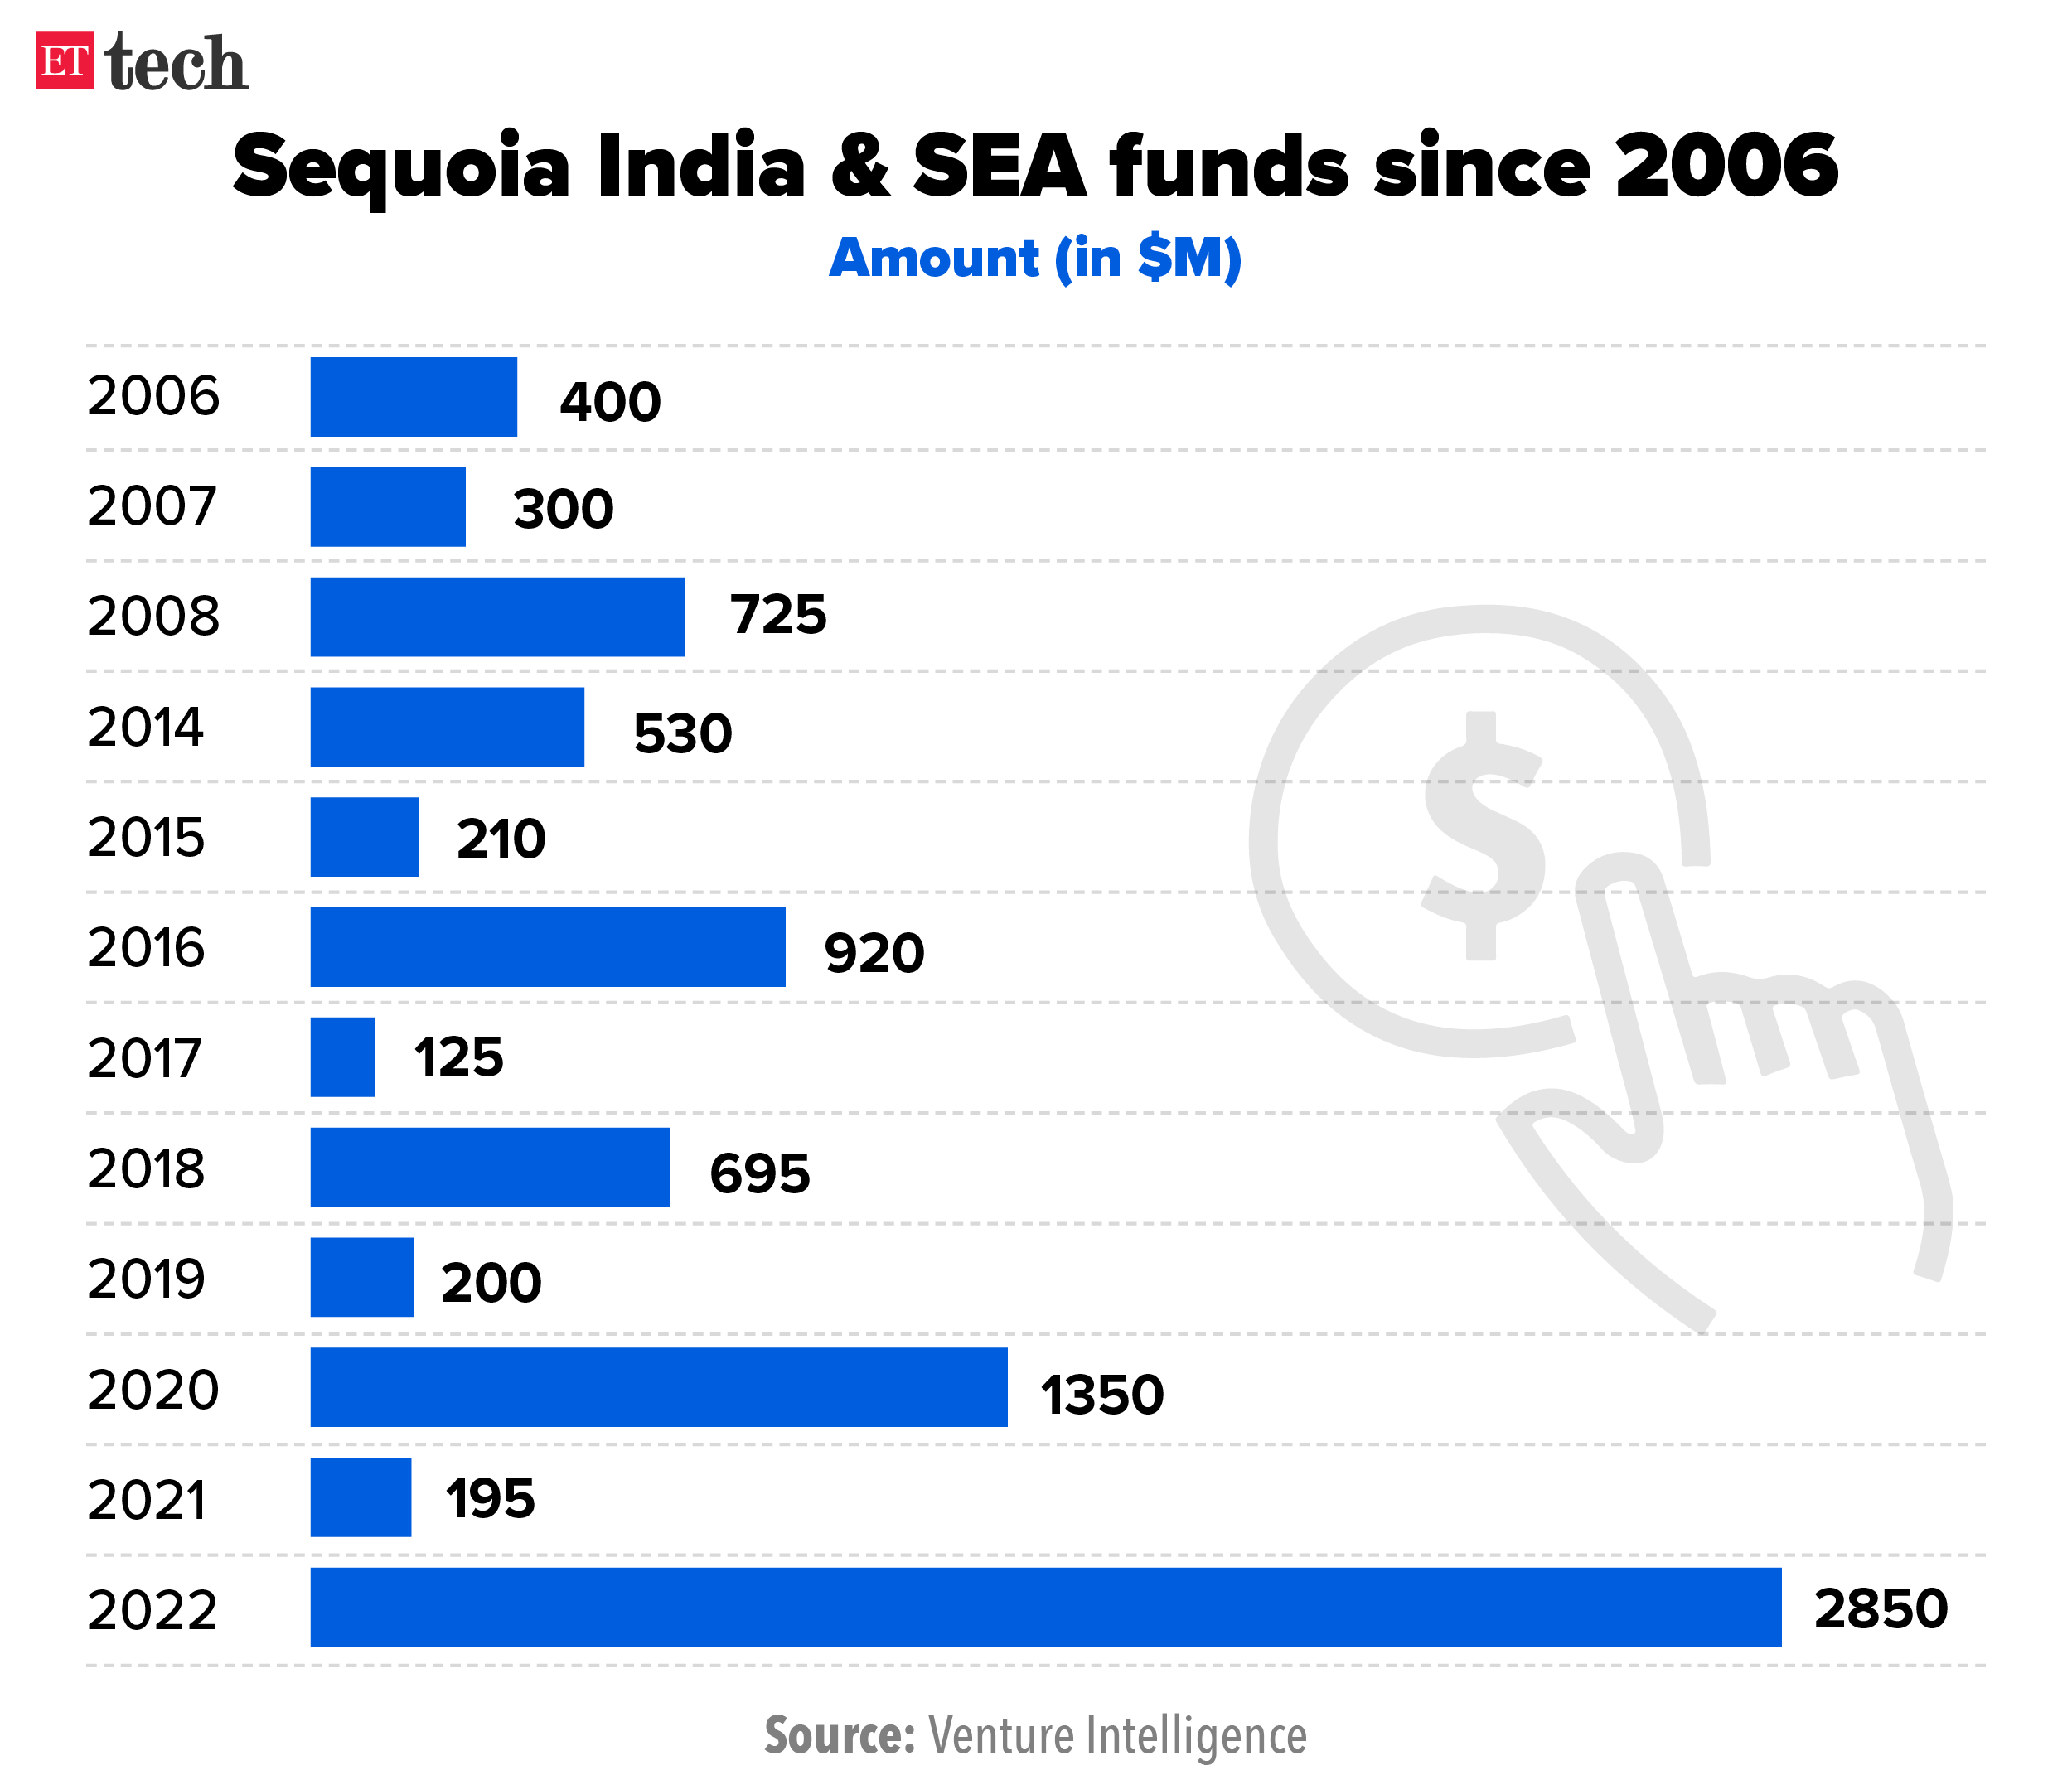 Sequoia India dominates the region